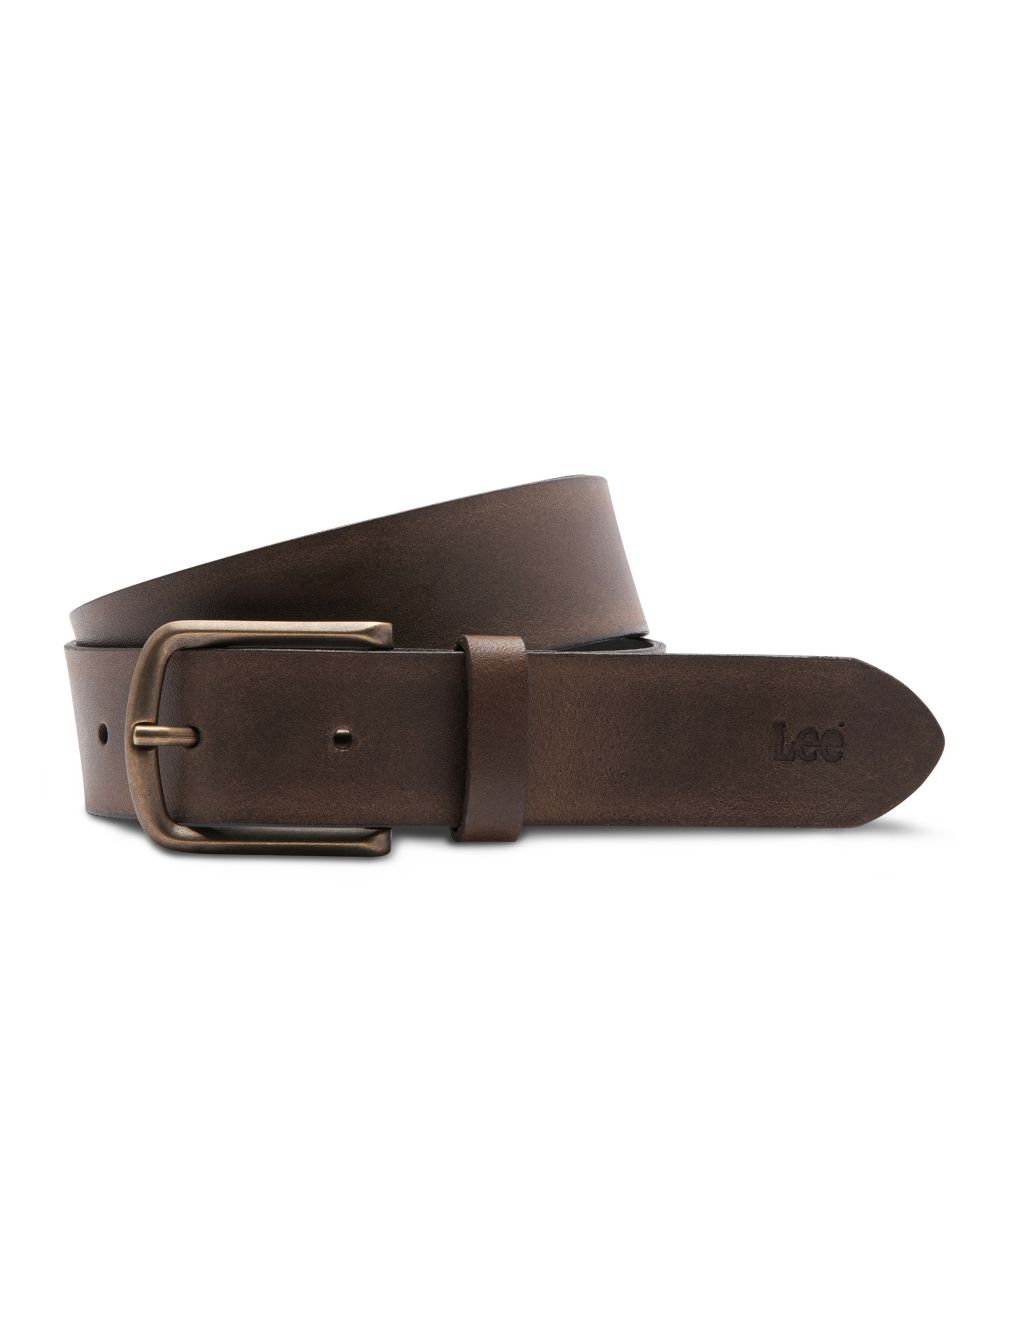 Leather Belt image 2